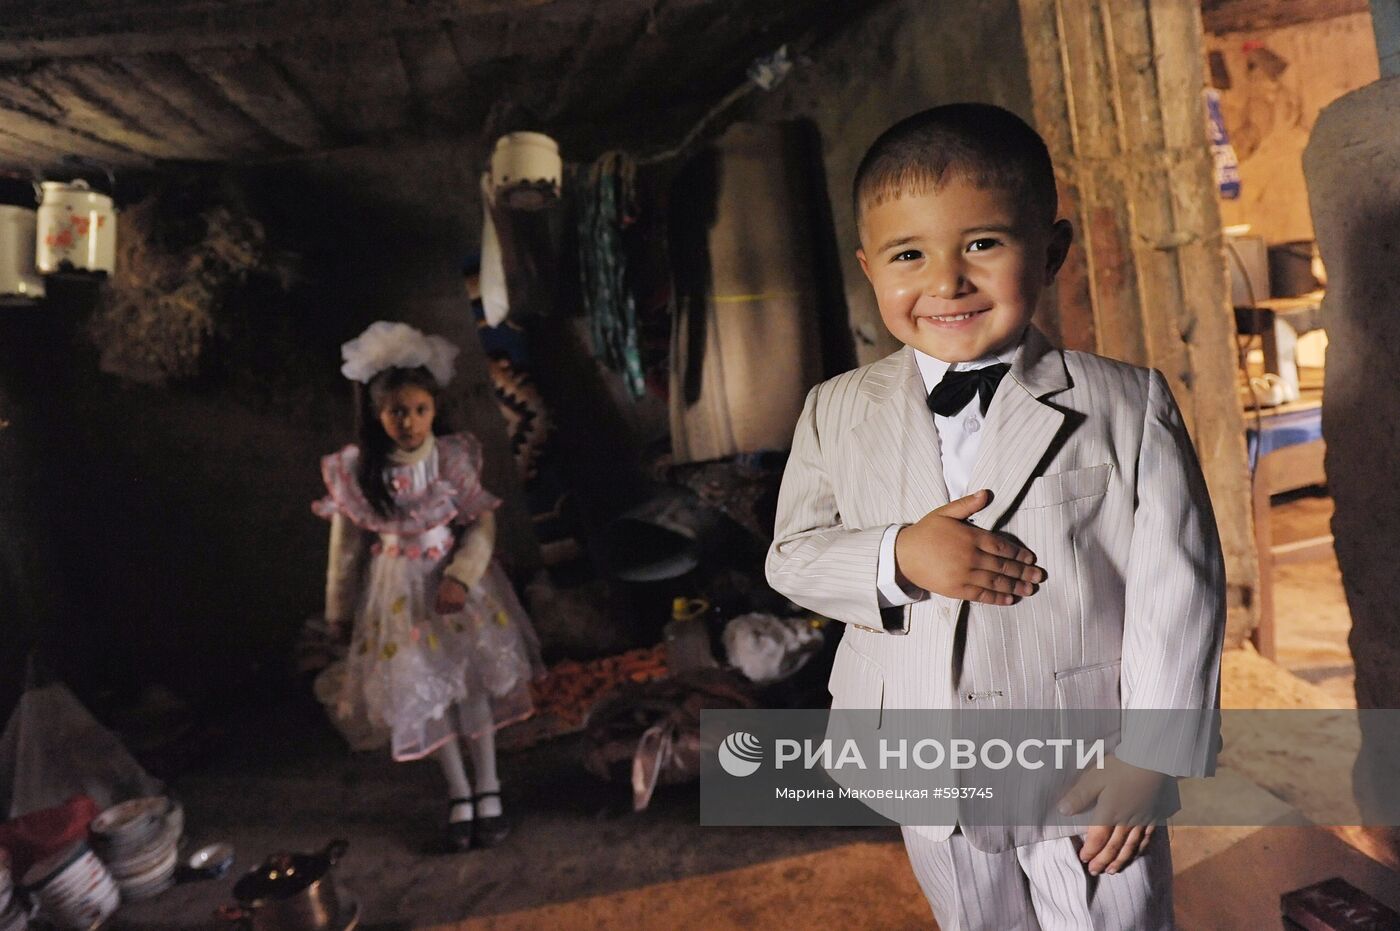 Юный житель Вахдатского района Таджикистана